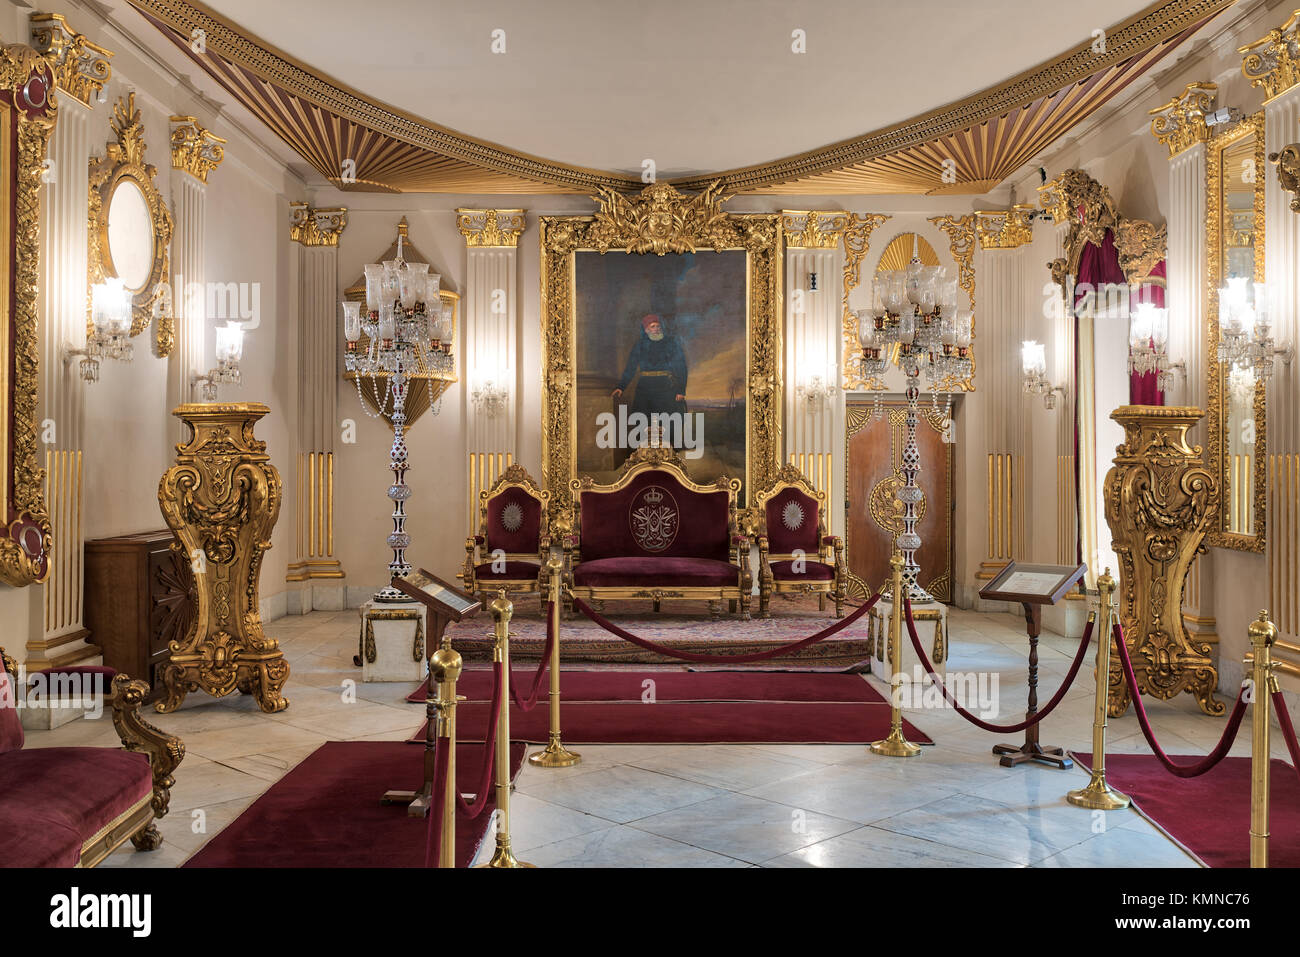 El Cairo, Egipto - Diciembre 2, 2017: en el Salón del Trono del Palacio Manial del Príncipe Mohammed Ali Tewfik rojo chapado en oro con sillones, lámparas de piso de antigüedades, ornat Foto de stock